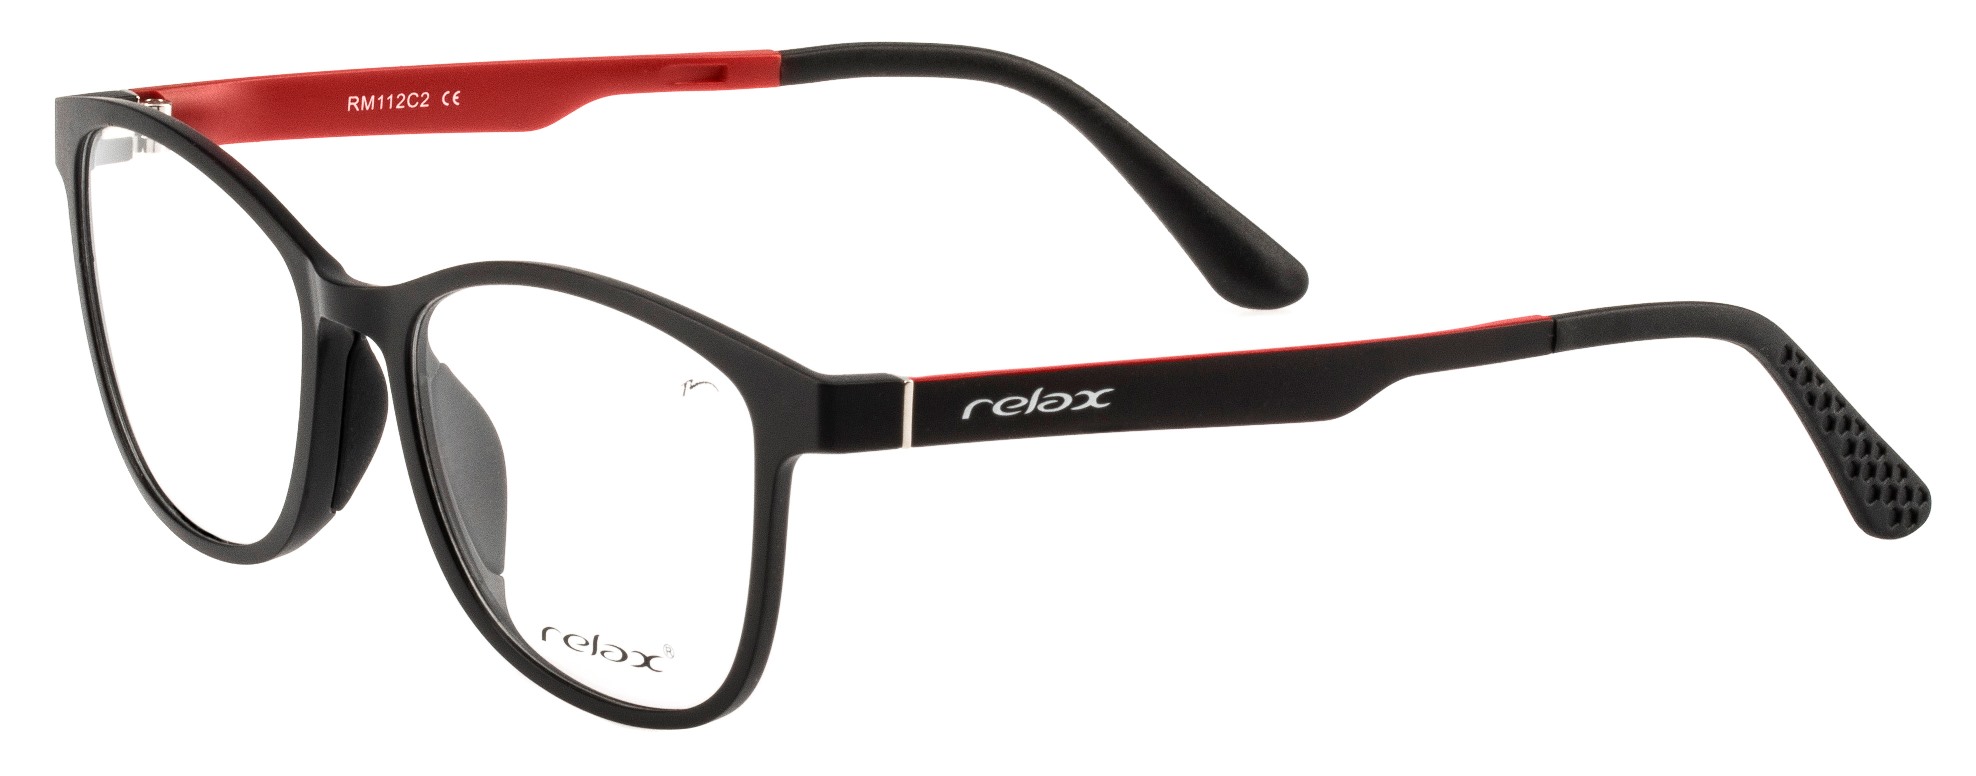 Optical frames Relax Ocun RM112C2